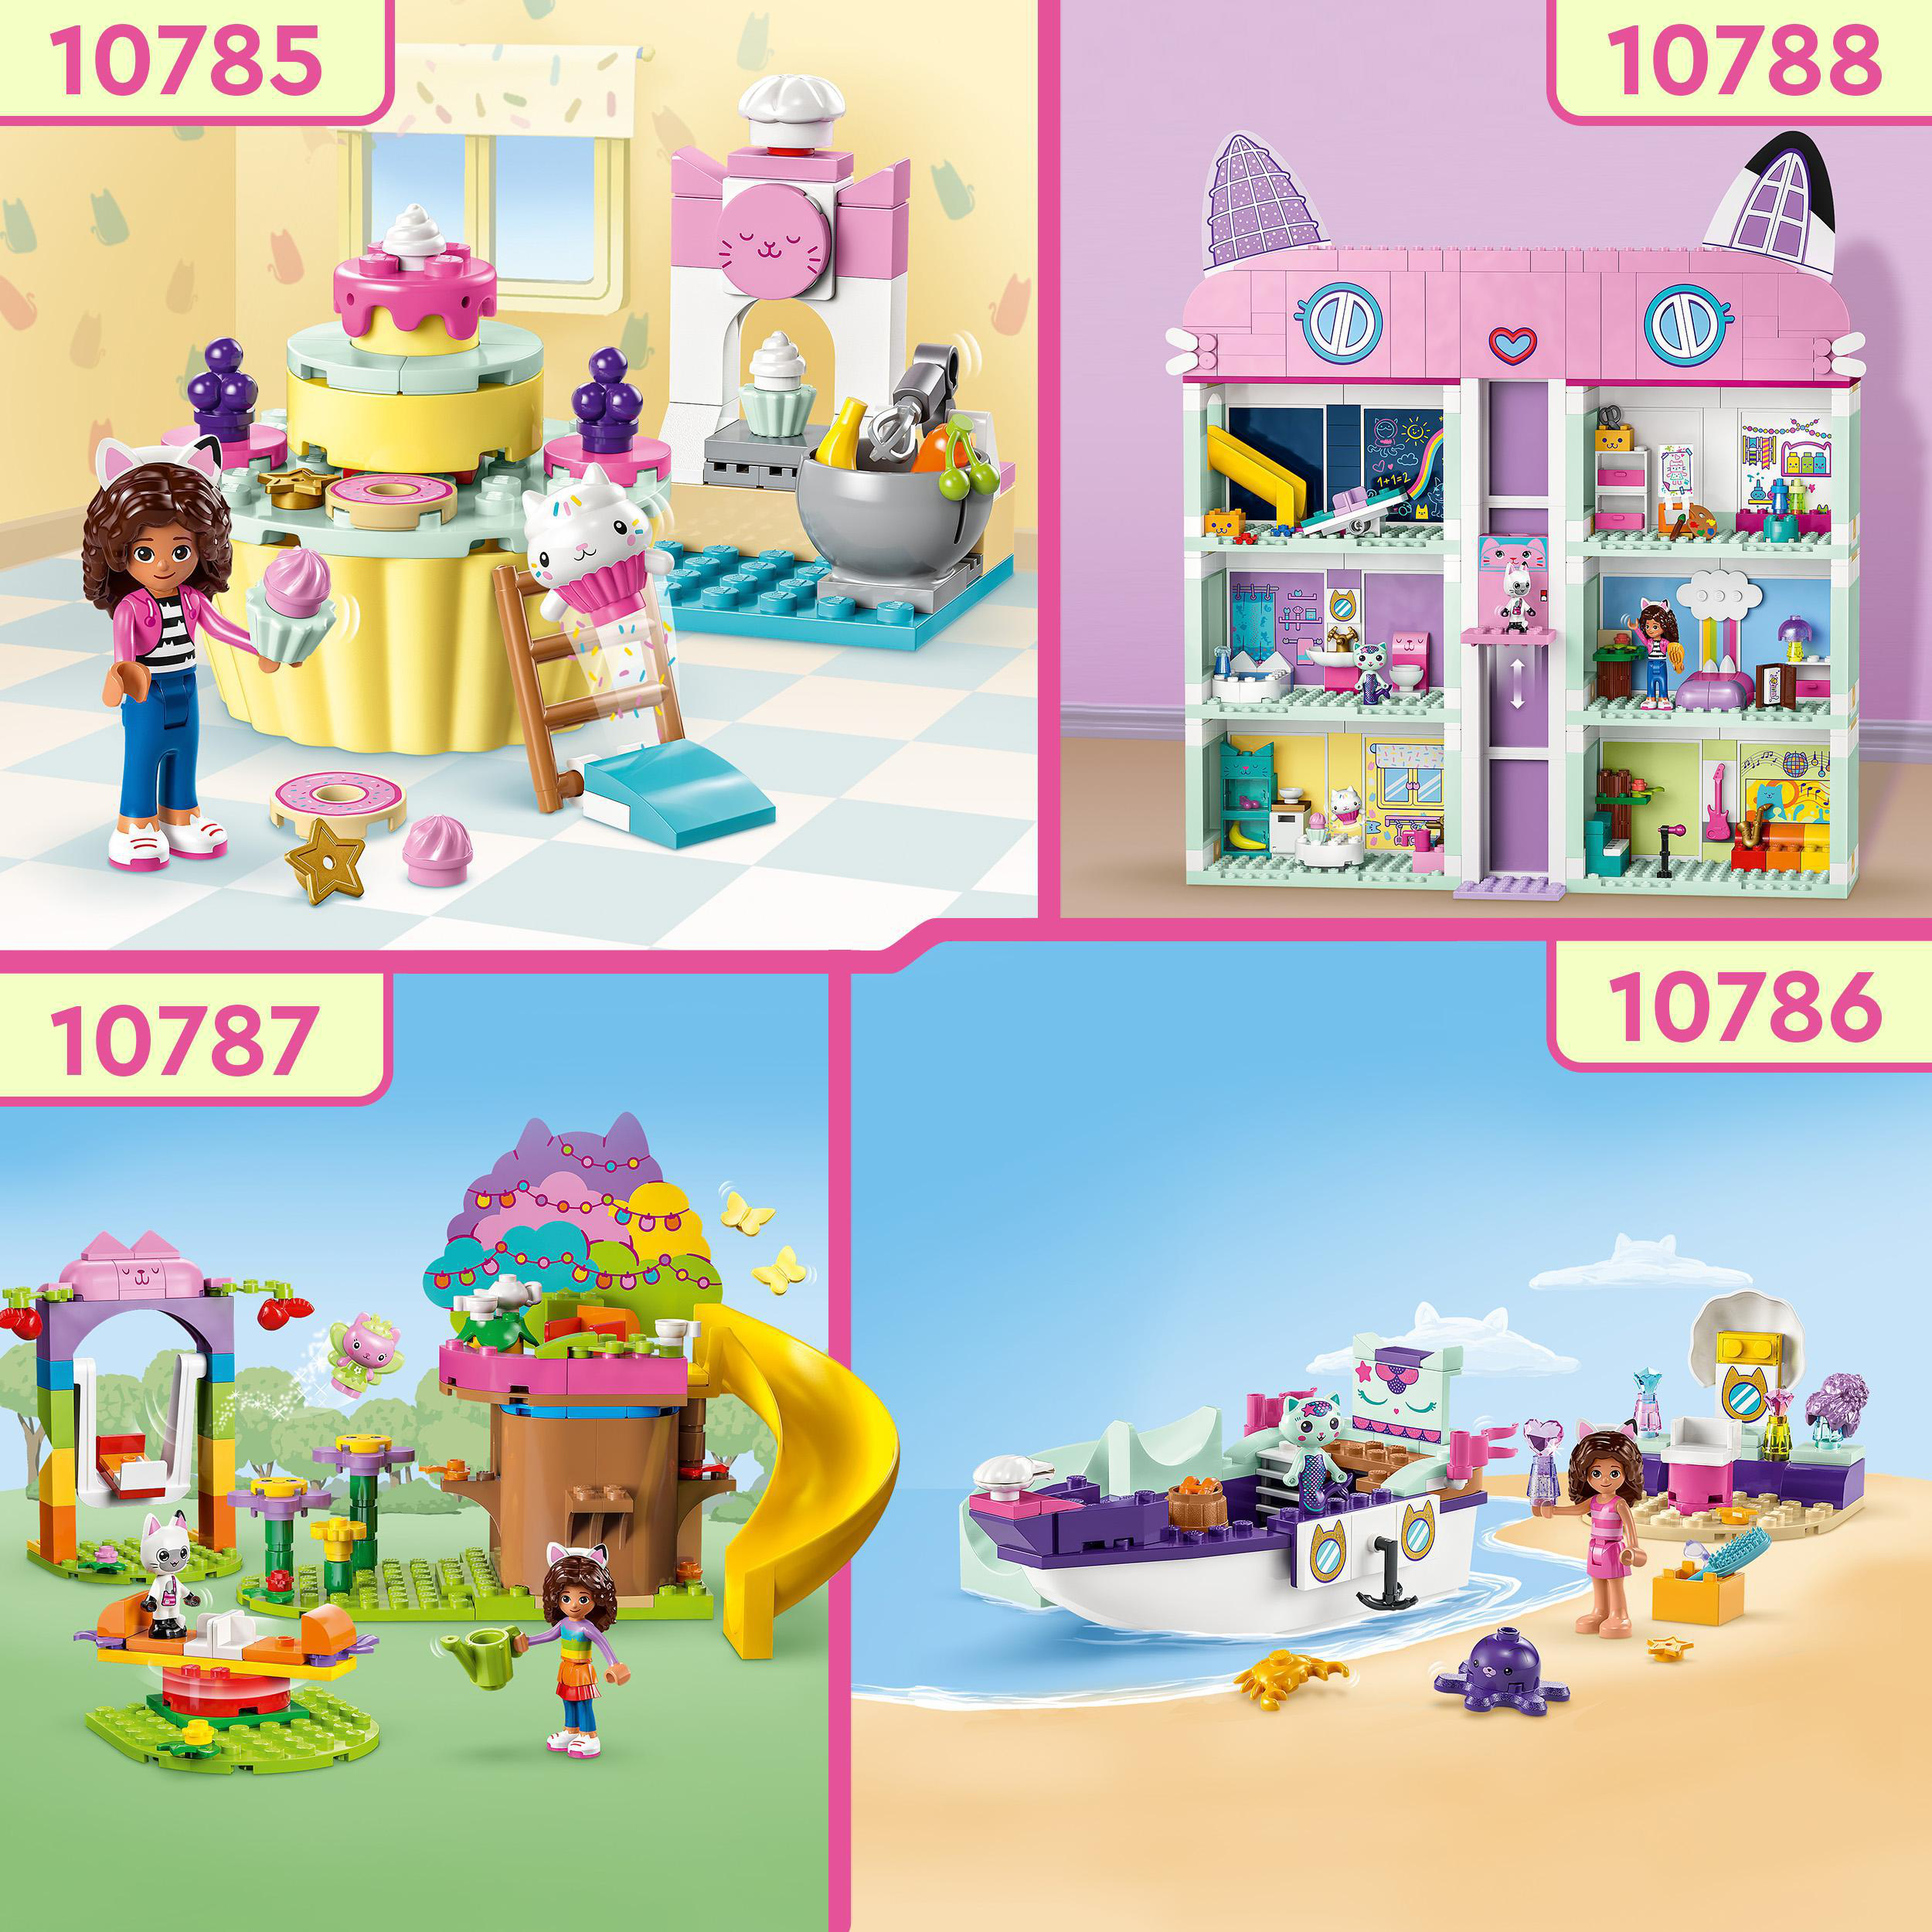 LEGO Gabby\'s Dollhouse 10786 Meerkätzchens Bausatz, Mehrfarbig Spa und Schiff